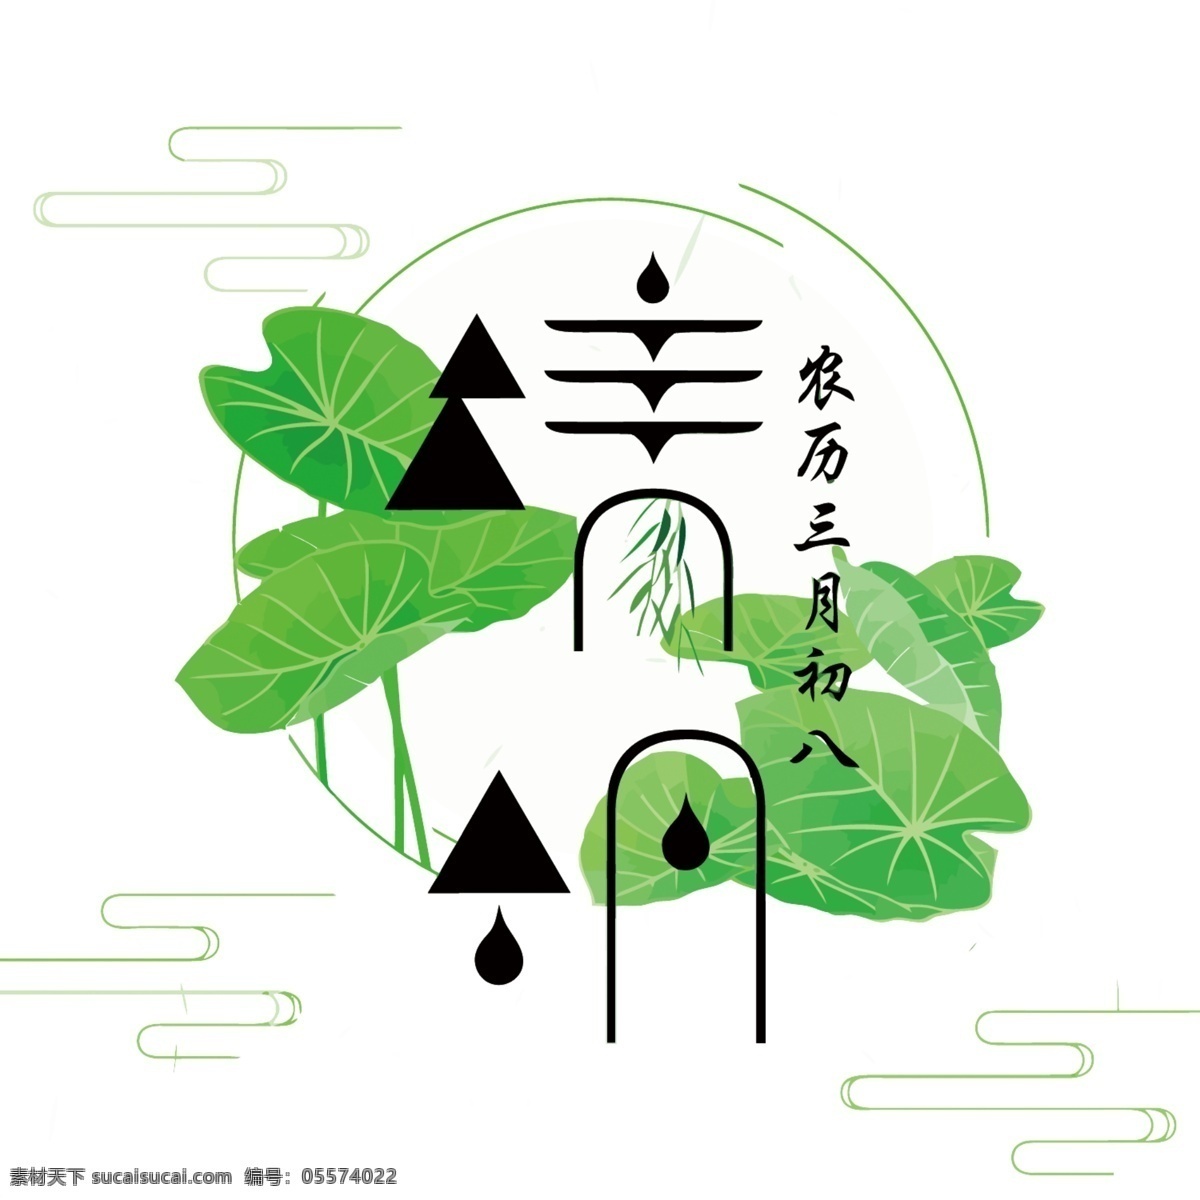 清新 荷叶 春分 节气 元素 植物 叶子 柳叶 中国文化 二十四节气 节日元素 手绘